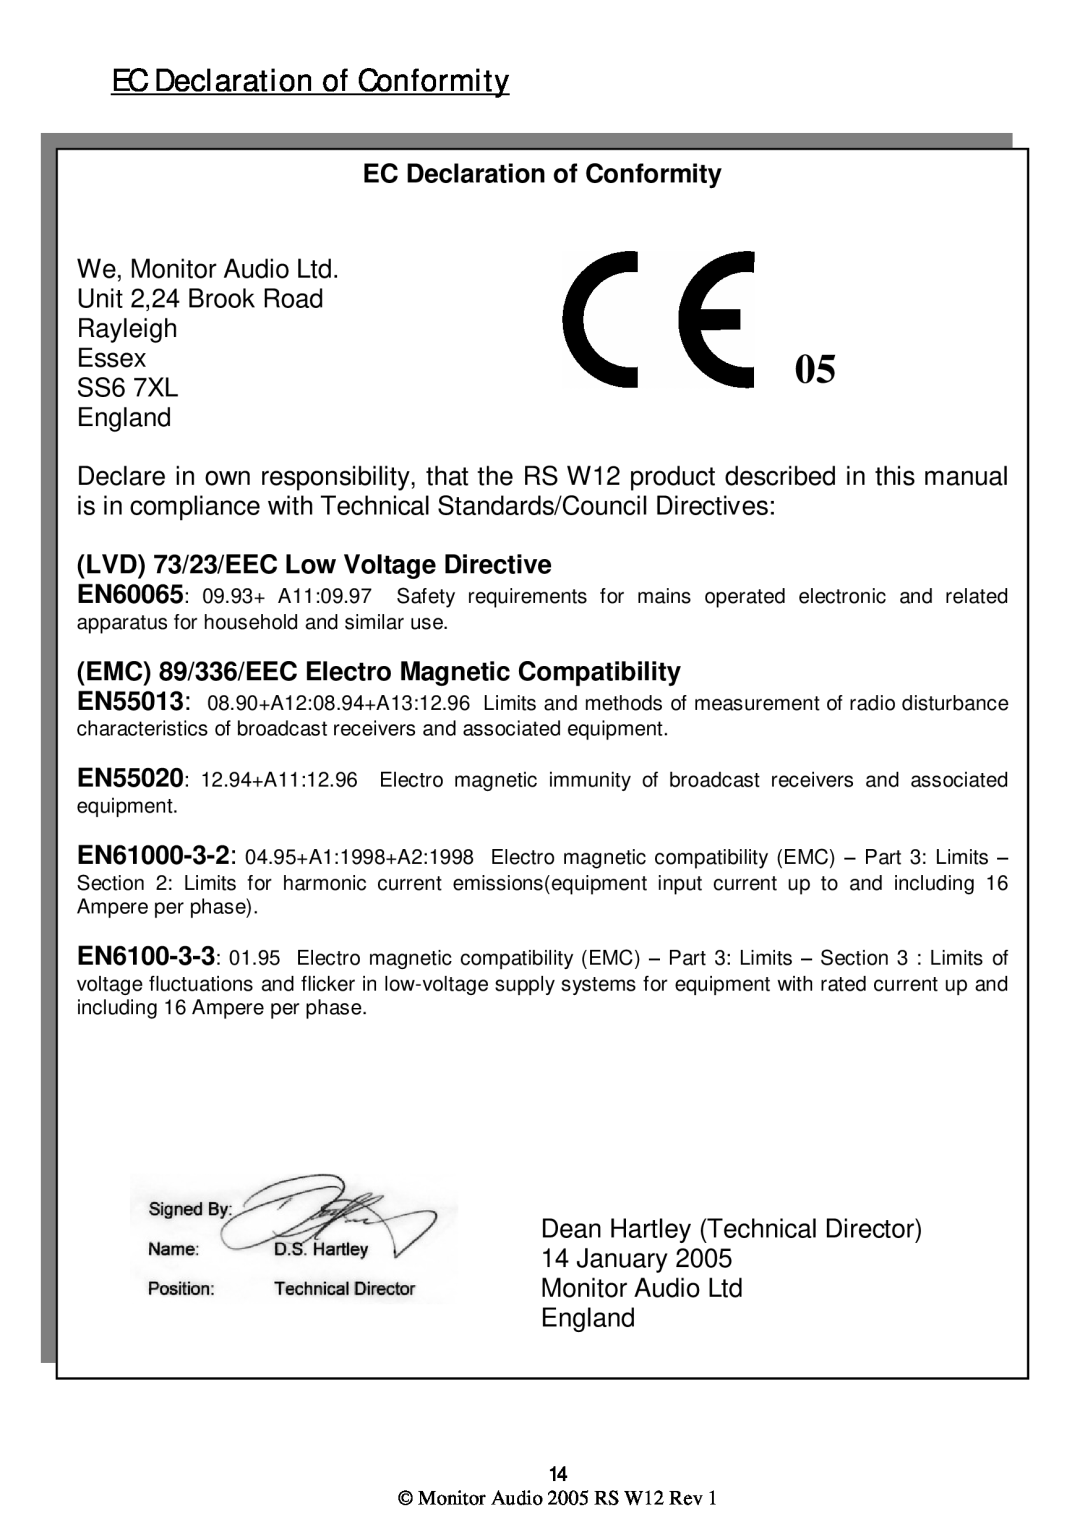 Monitor Audio RS W12 warranty EC Declaration of Conformity, LVD 73/23/EEC Low Voltage Directive 